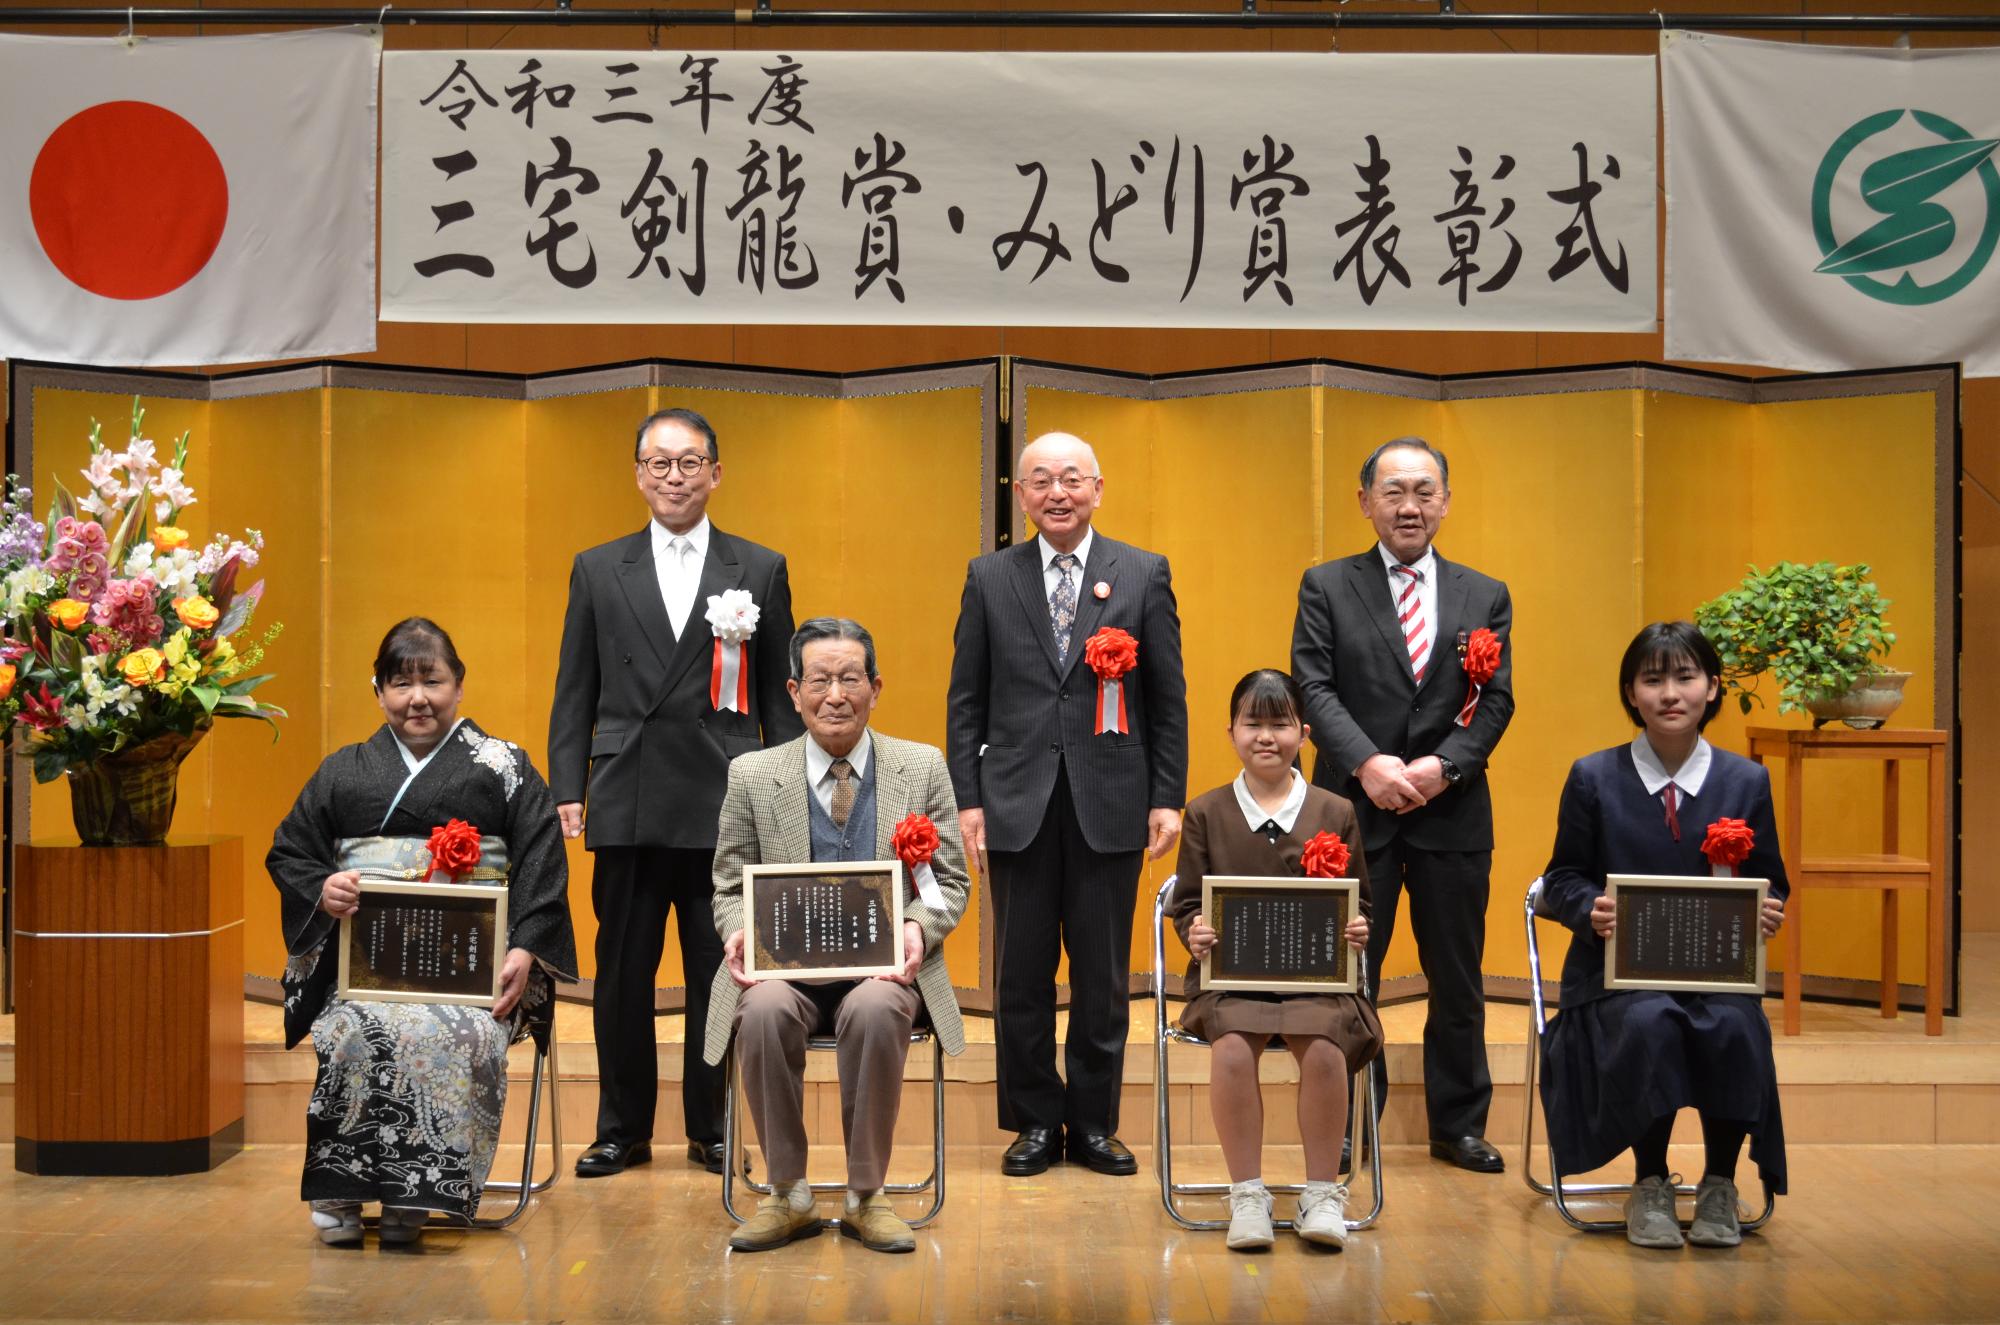 受賞者4名が前列に座ってひざに表彰盾をかかげている。後列に市長、教育長、議長が立っている